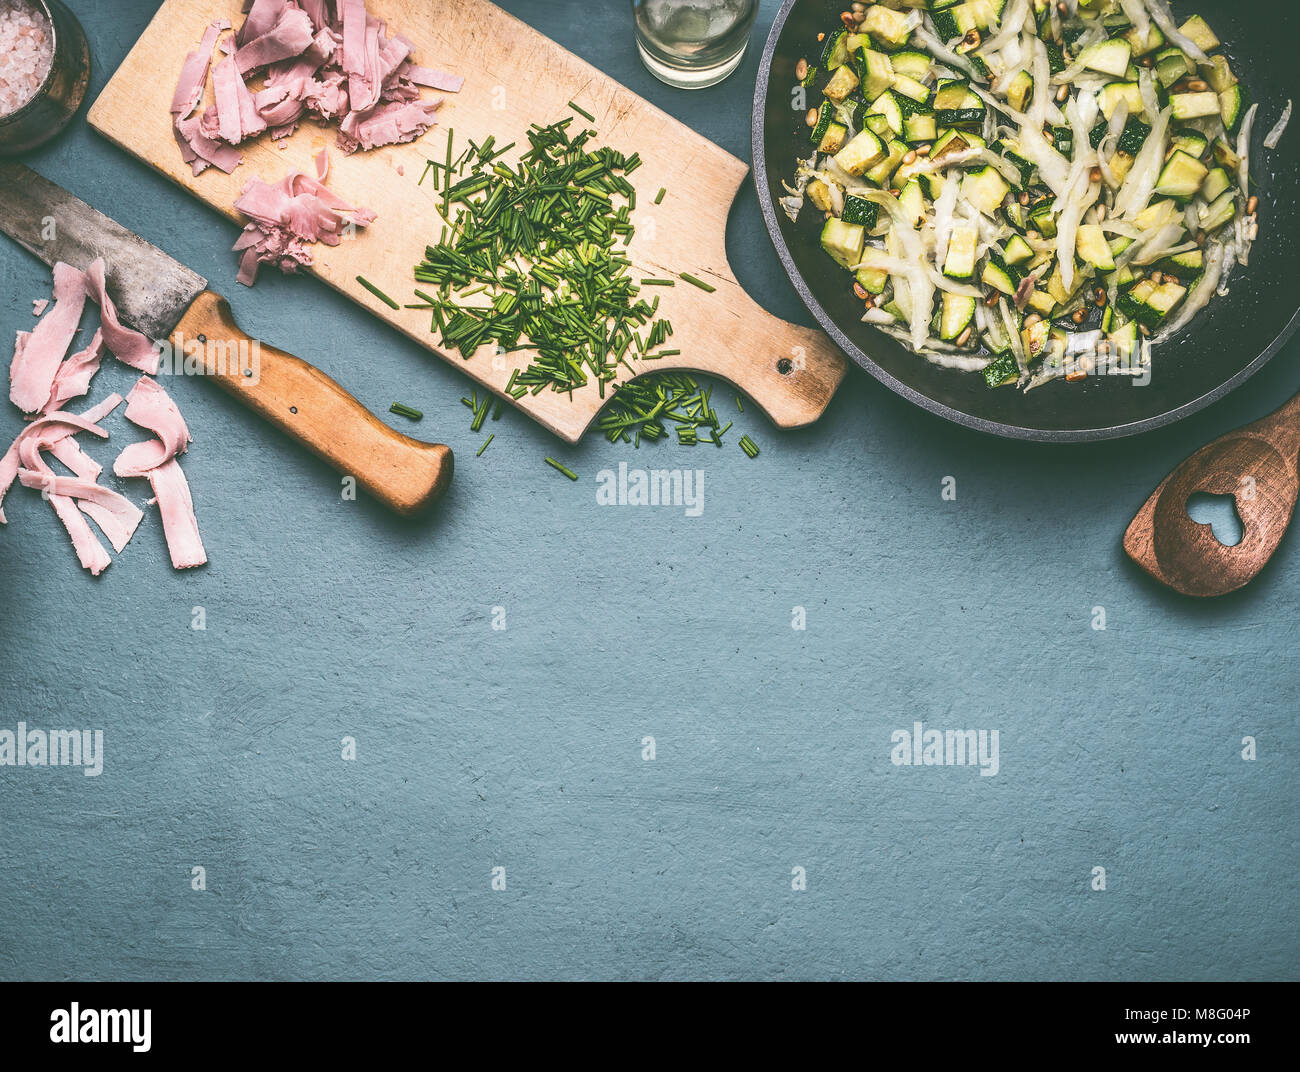 Gustose le zucchine e prosciutto piatto nel recipiente di cottura sul tavolo da cucina con ingredienti, vista dall'alto Foto Stock